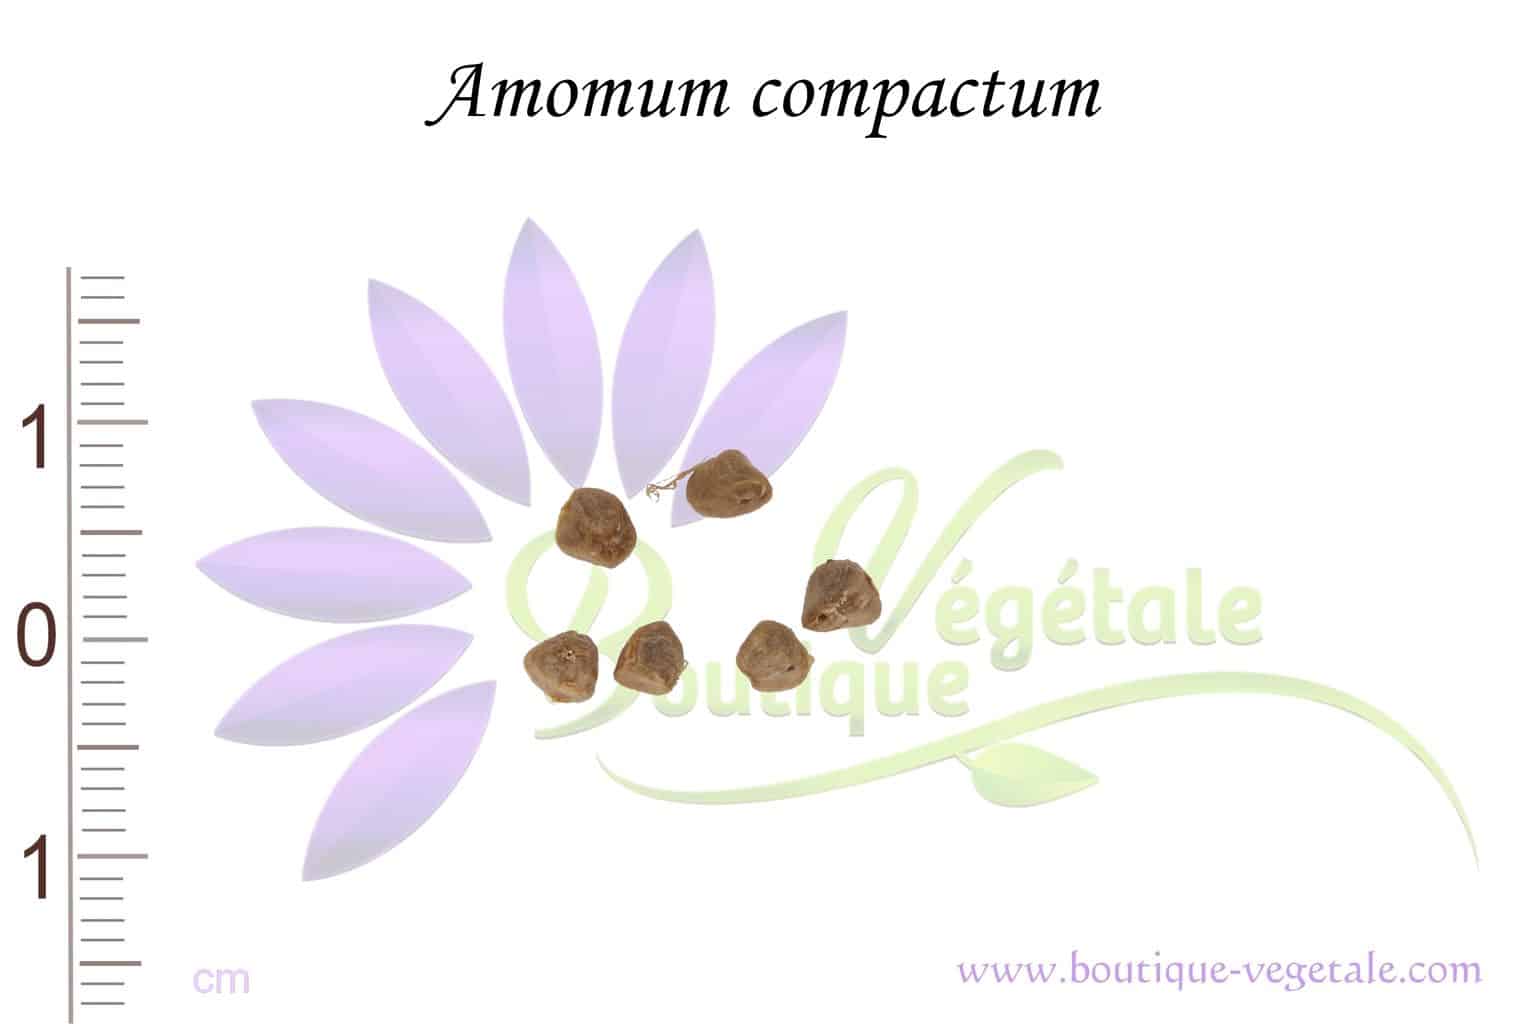 Graines d'Amomum compactum, Amomum compactum seeds